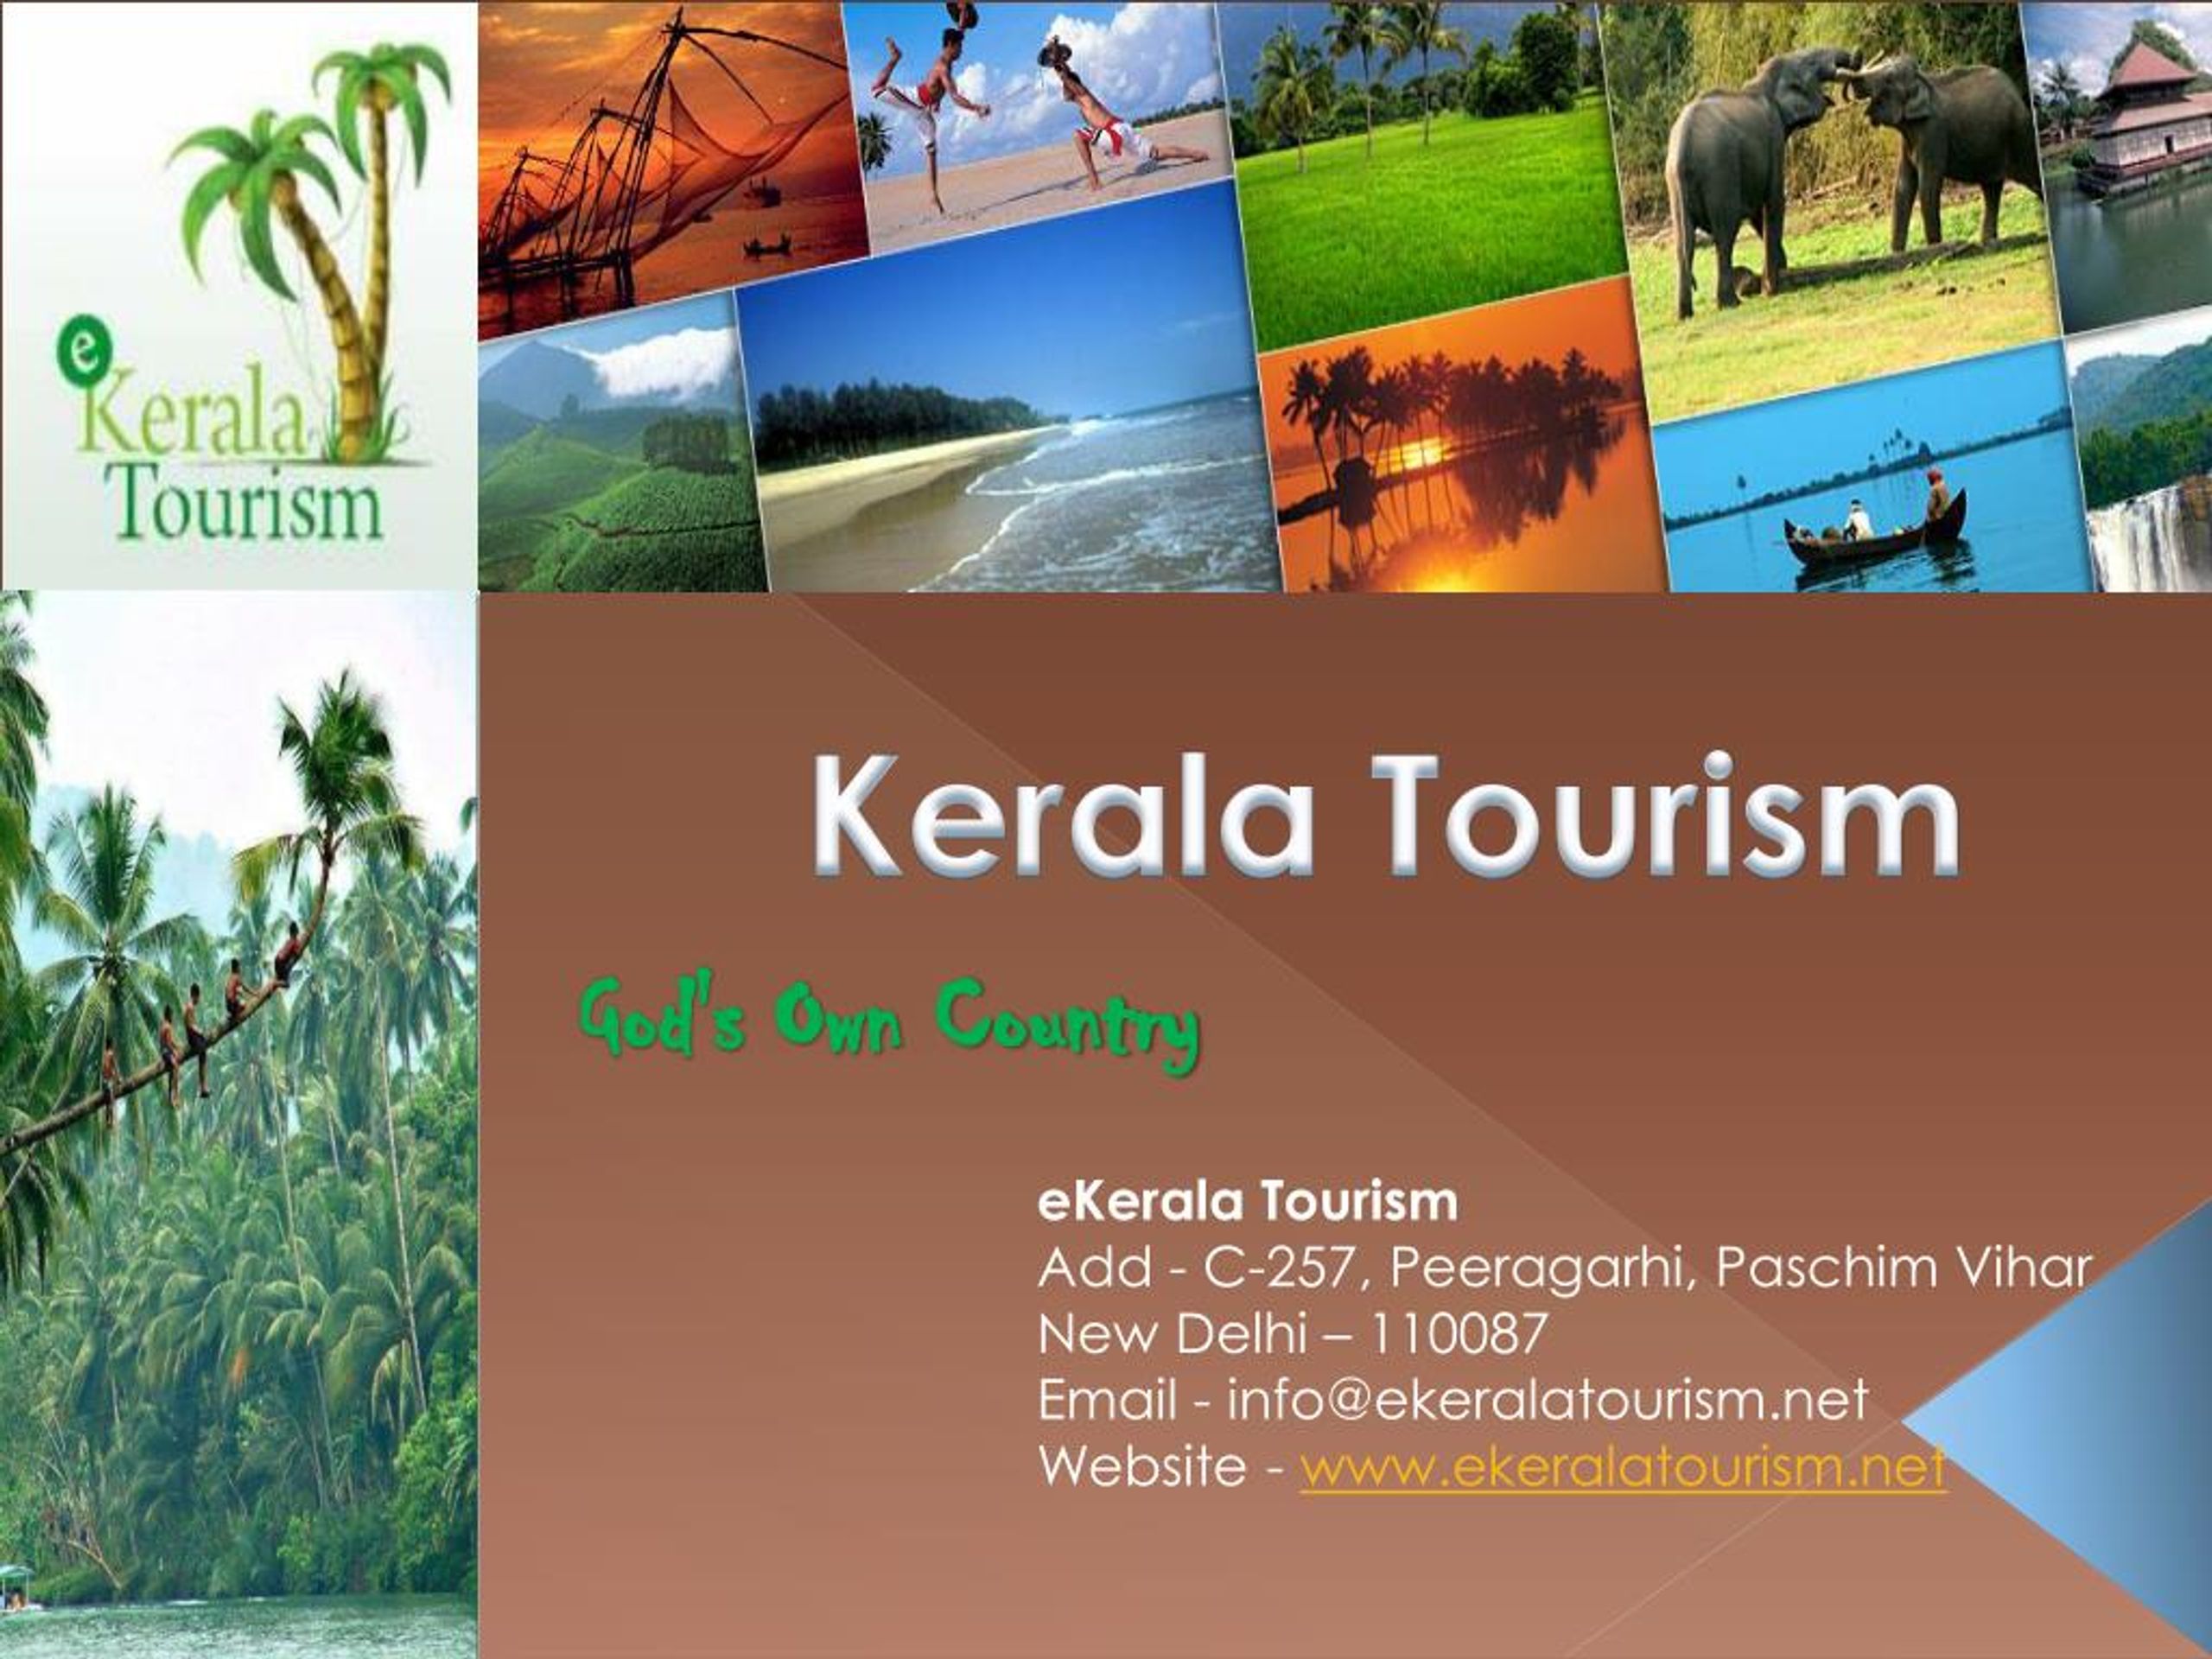 powerpoint presentation of kerala tourism